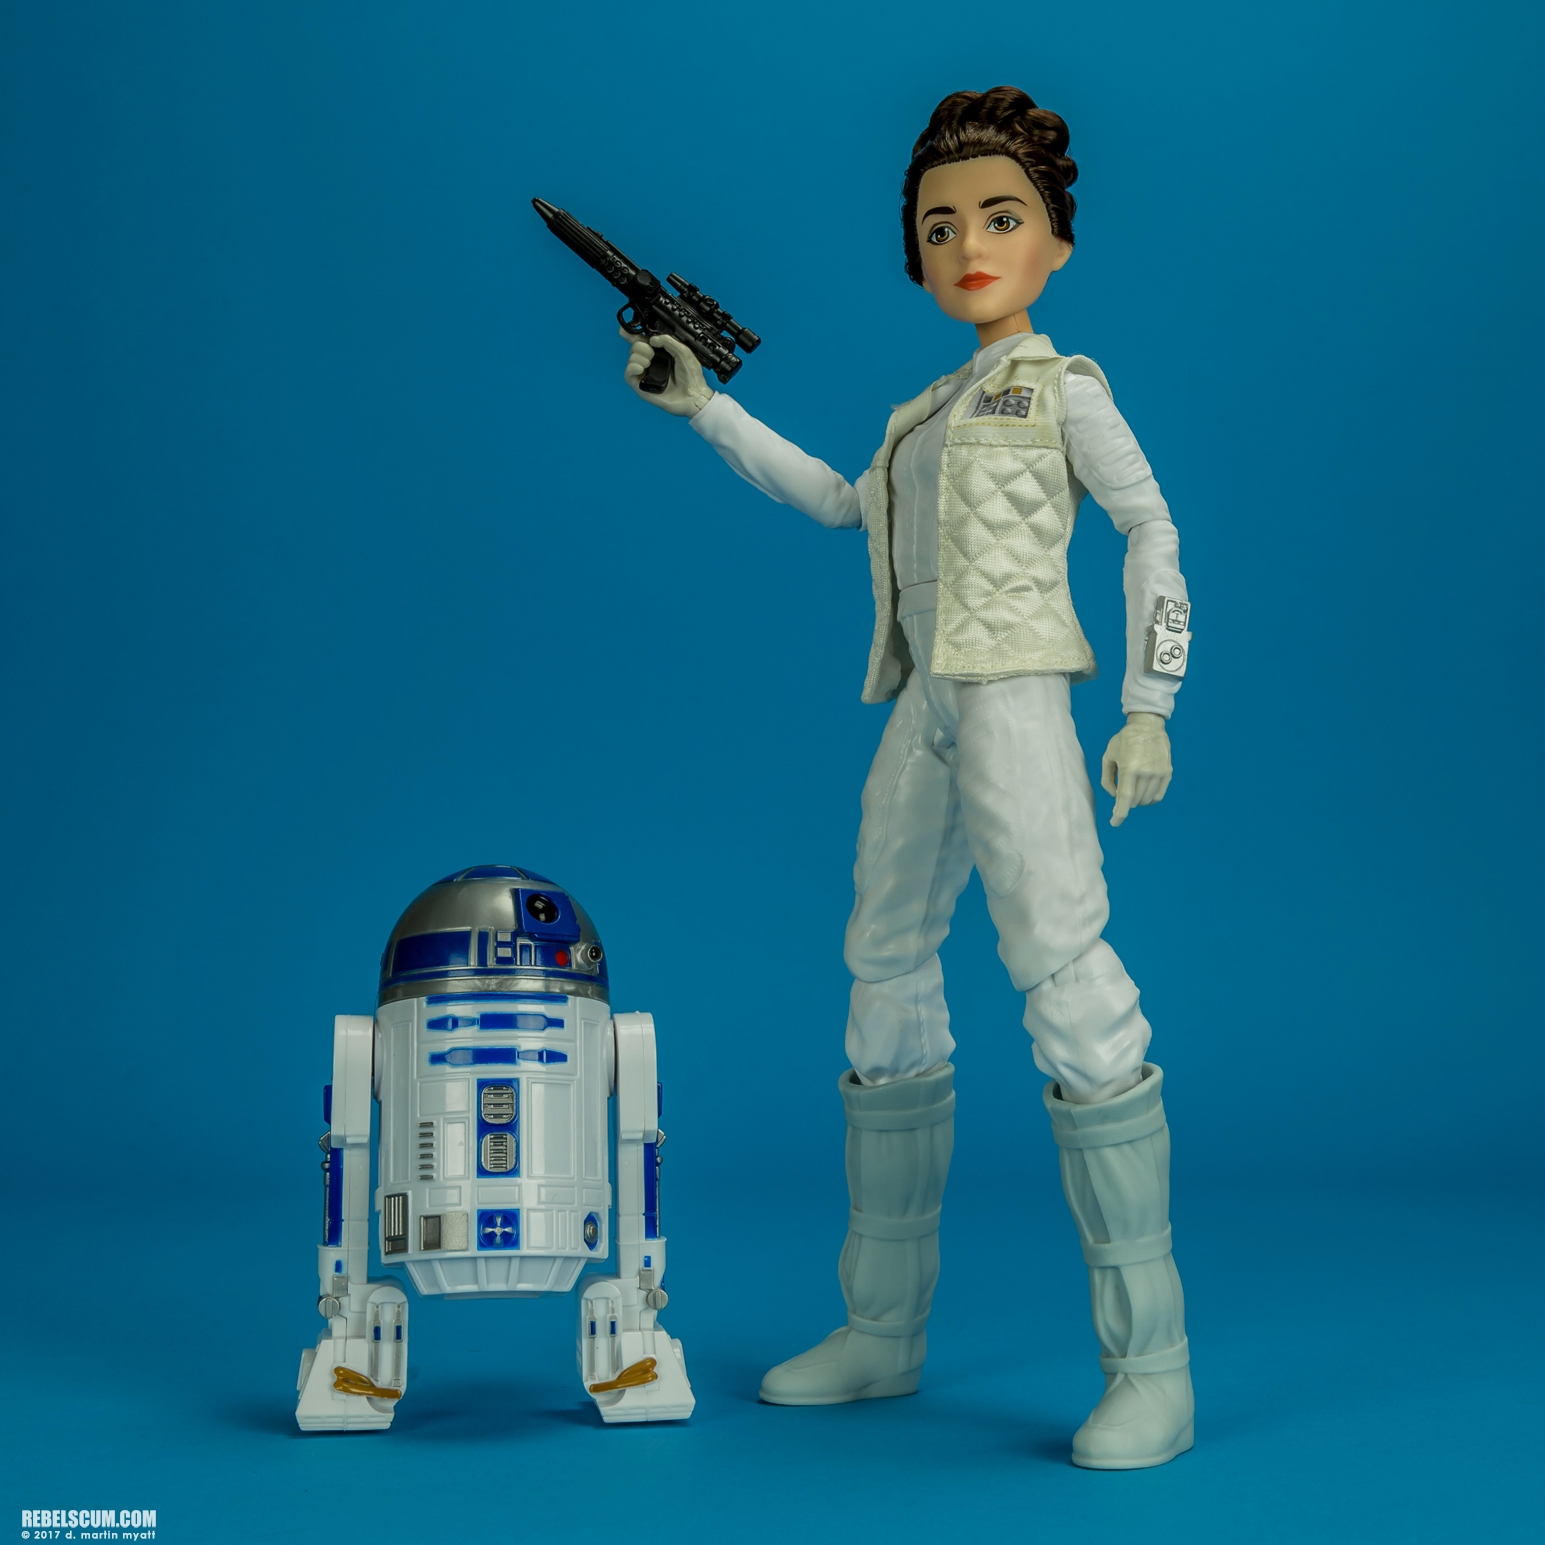 Forces-Of-Destiny-Princess-Leia-Organa-R2-D2-010.jpg